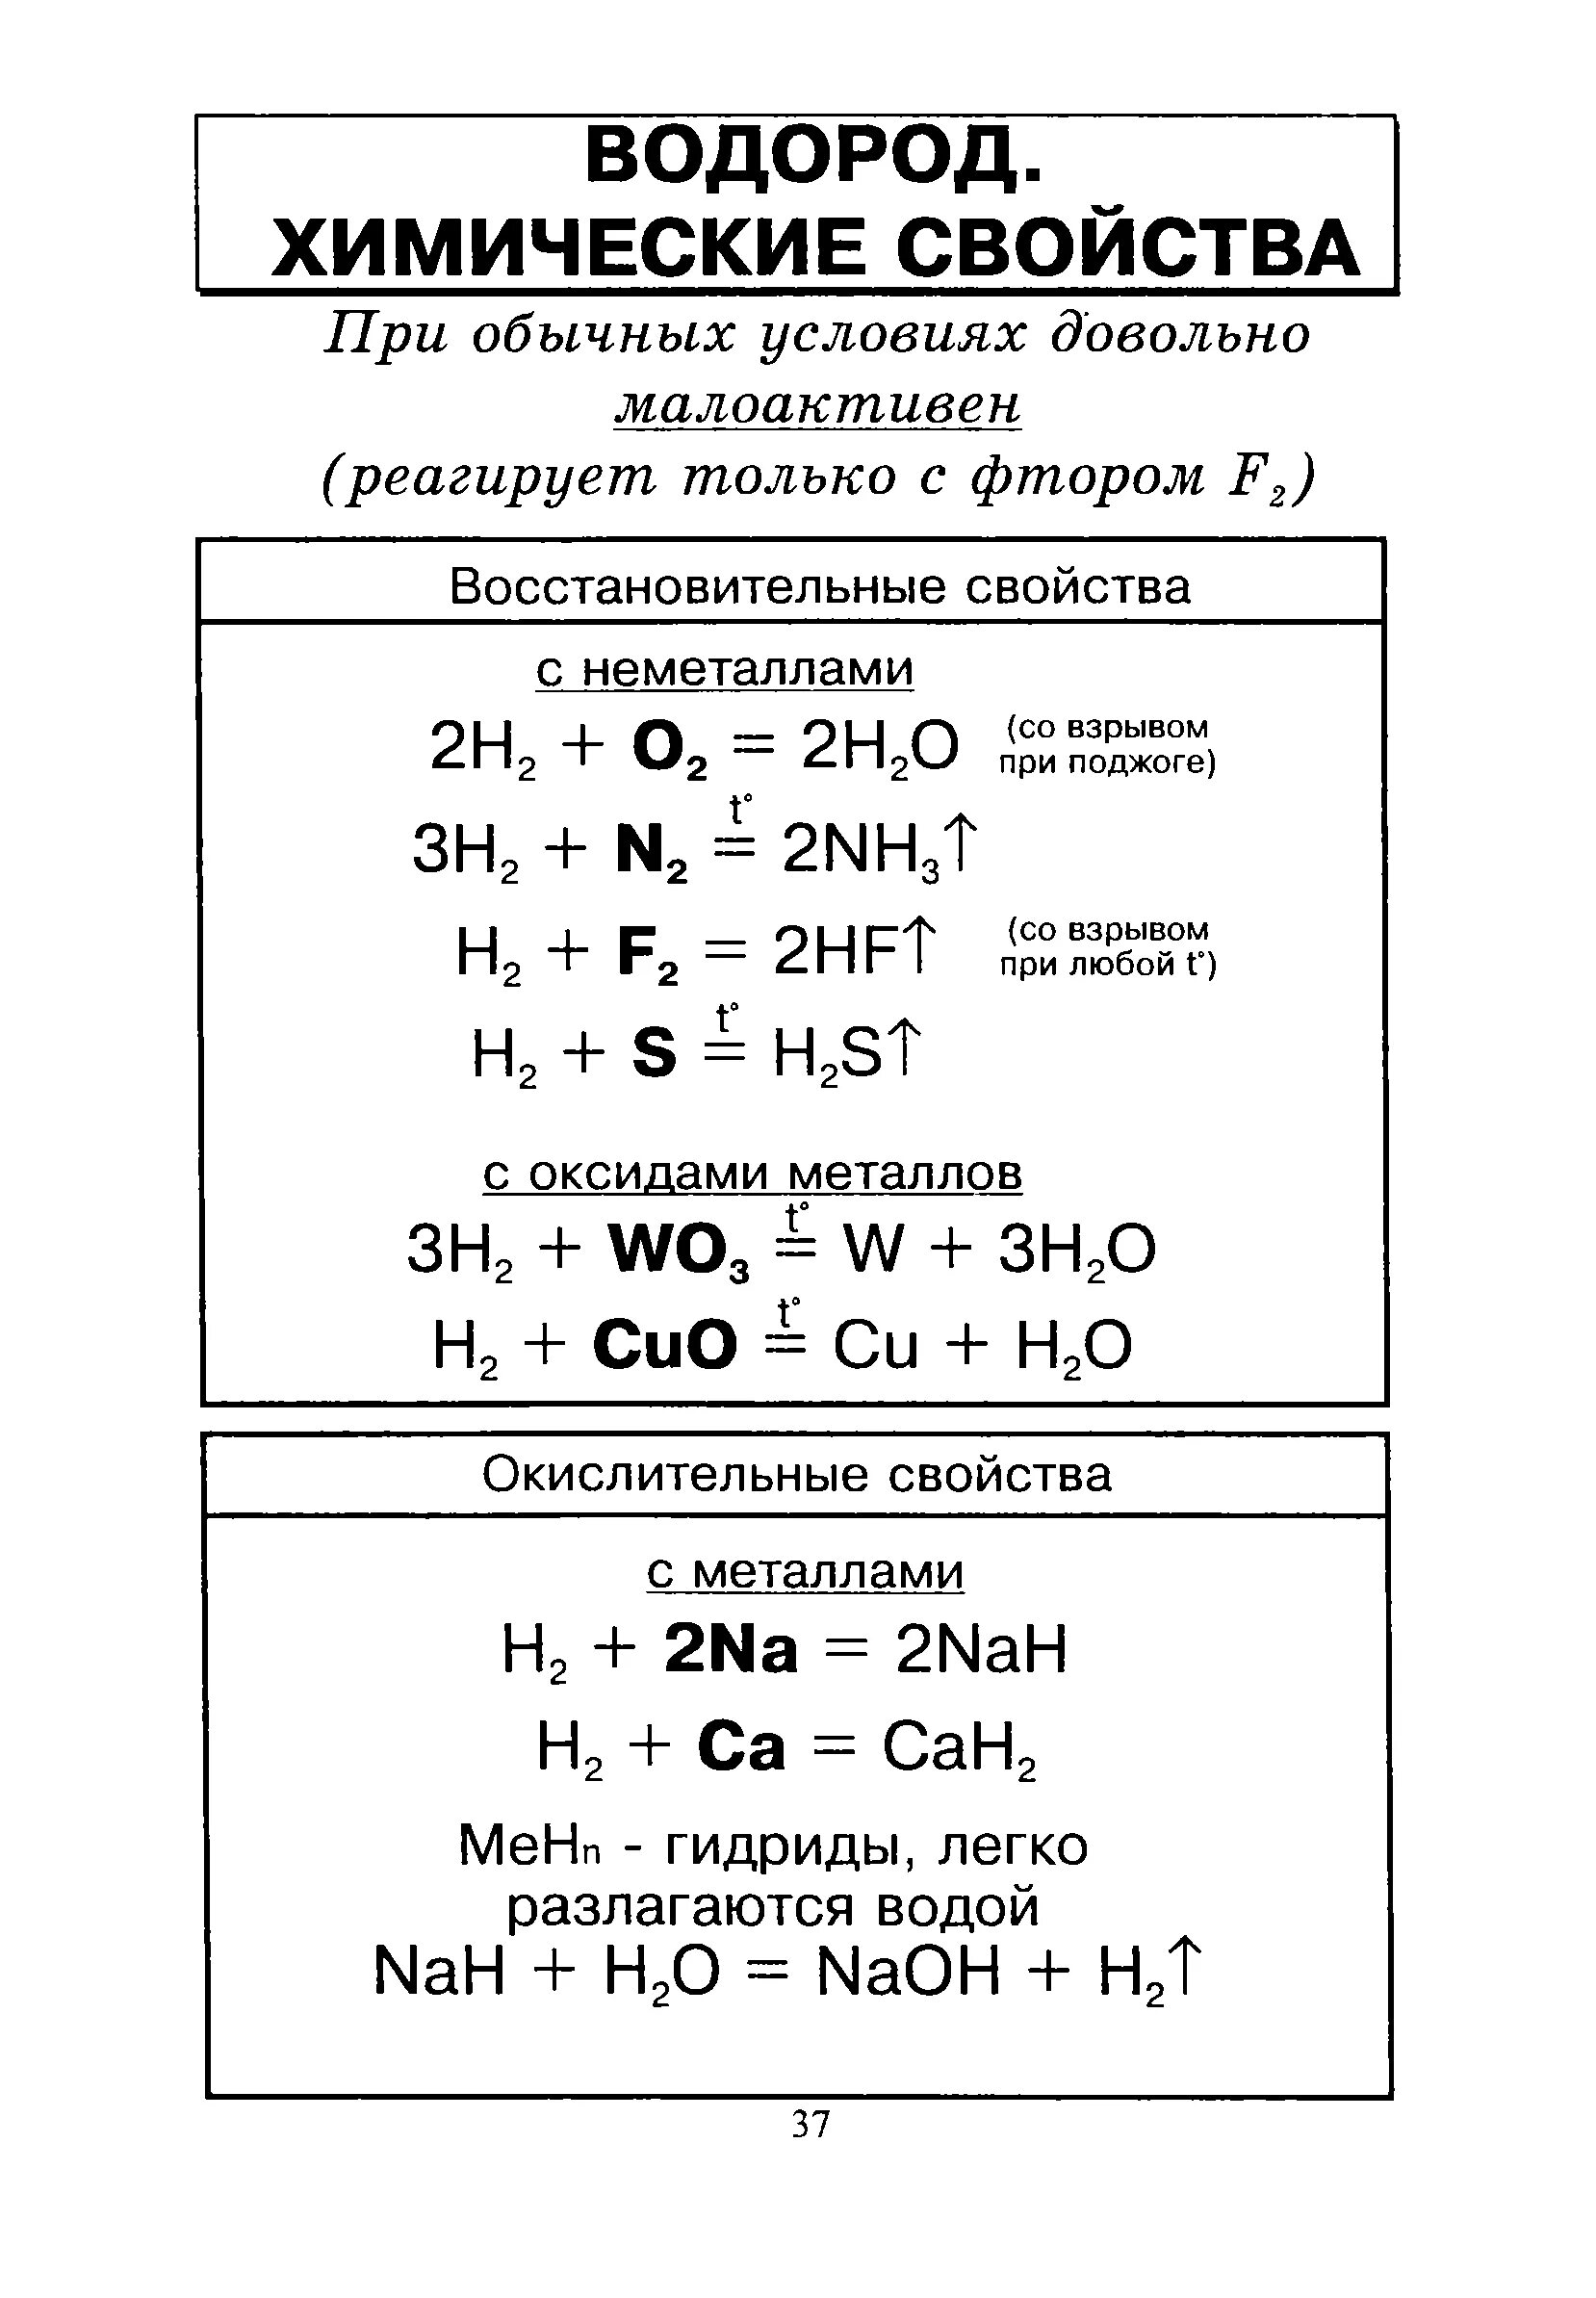 Химические свойства водорода 8 класс химия. Химические свойства водорода 9 класс химия. Химические свойства водорода реакции. Характеристика водорода химические свойства. Бром вступает в реакцию с водородом